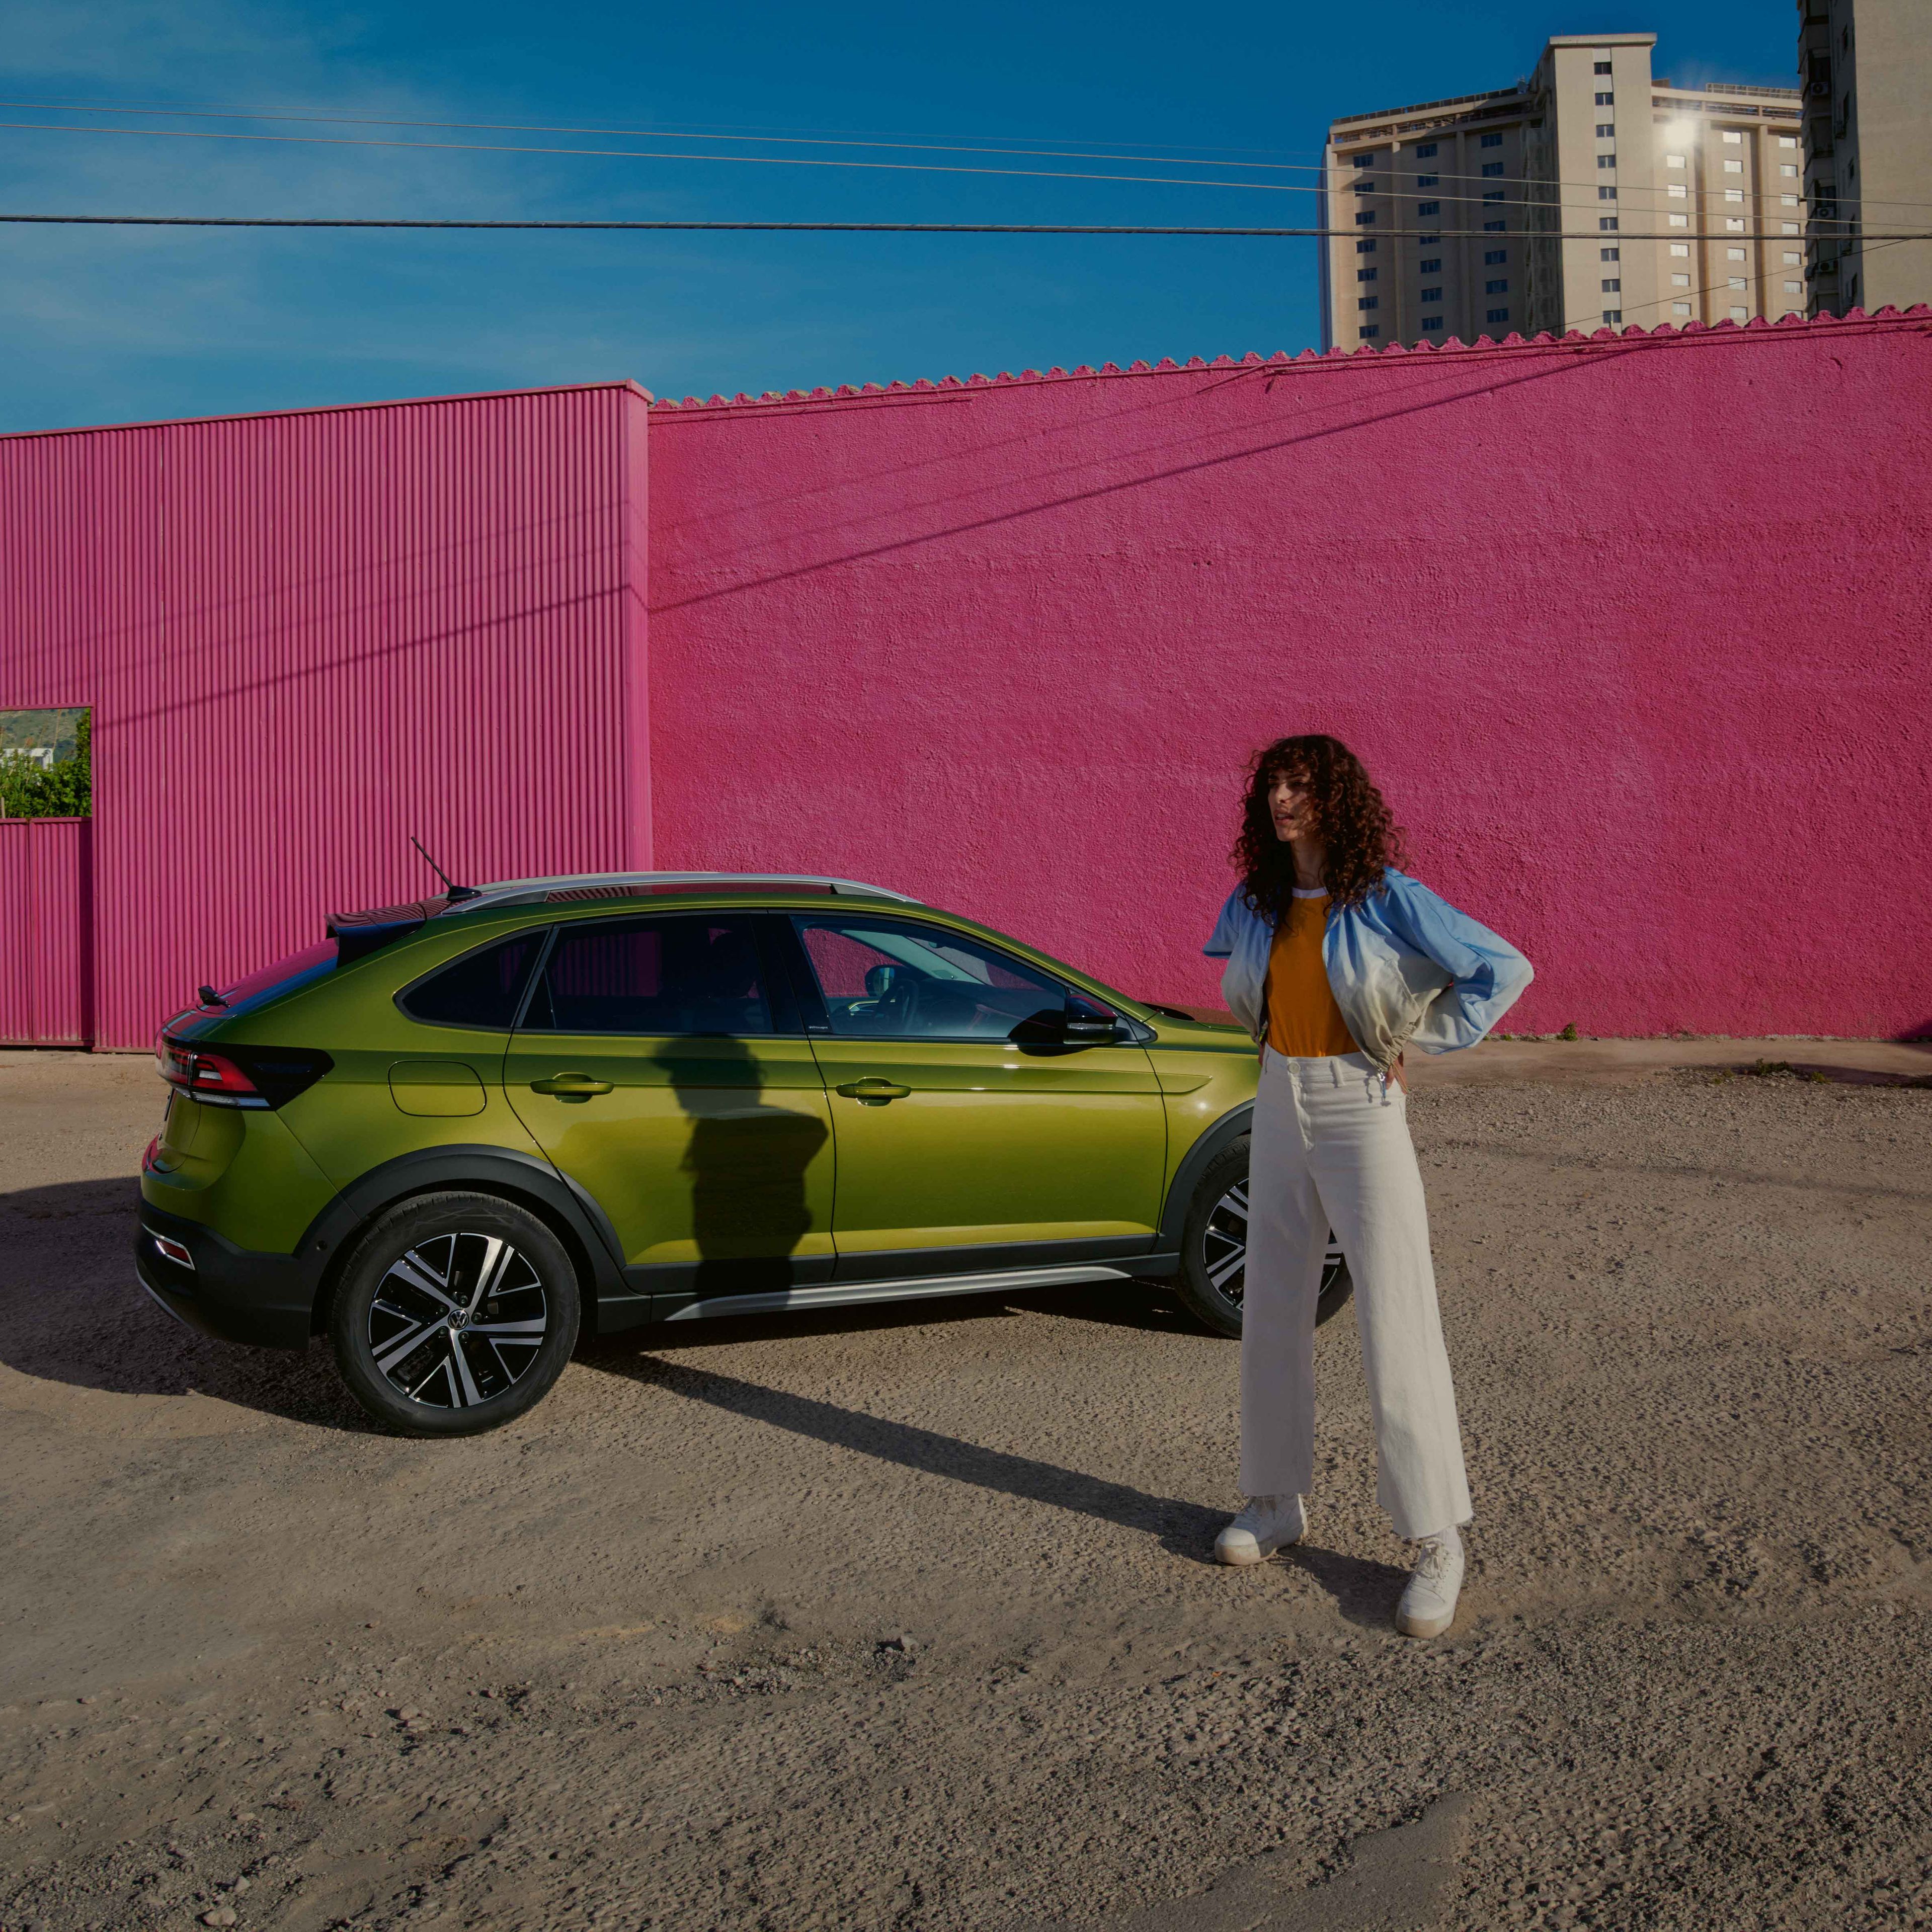 VW Taigo in Grün auf Parkplatz, Seite sichtbar, Frau steht vor Auto